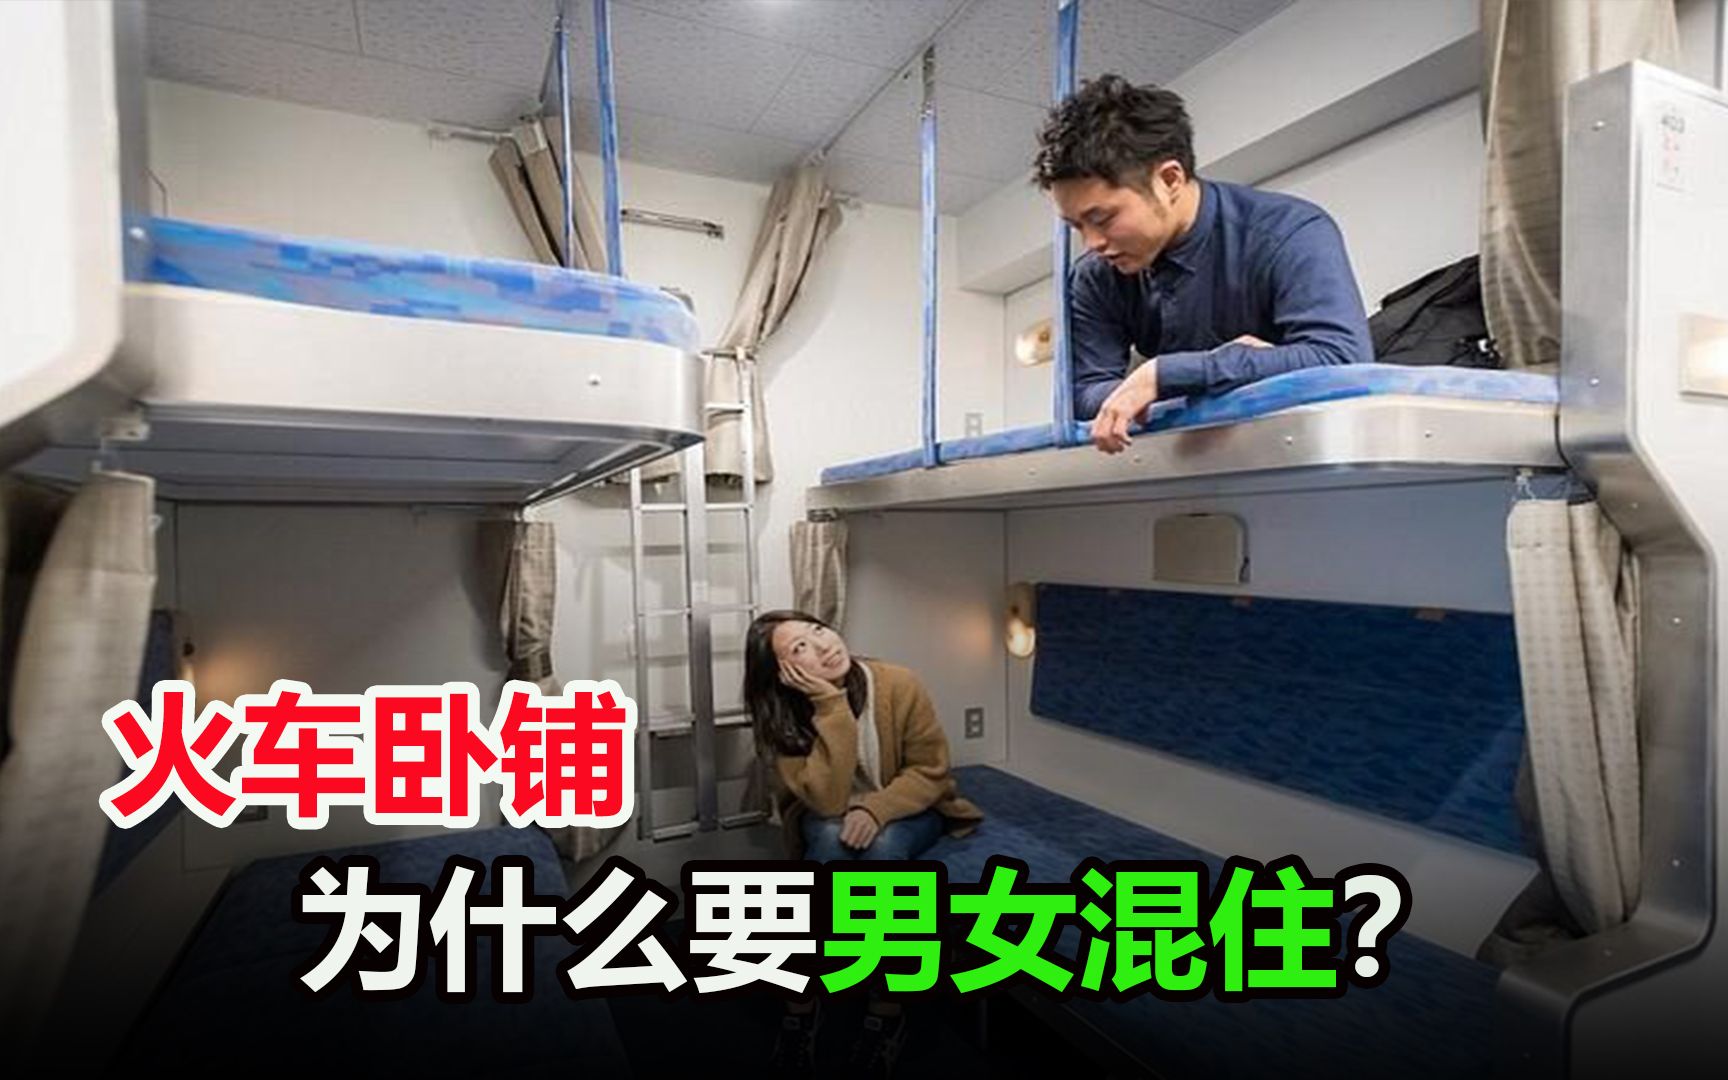 火车卧铺车厢，为什么是男女混住的？不能设置分隔区吗？